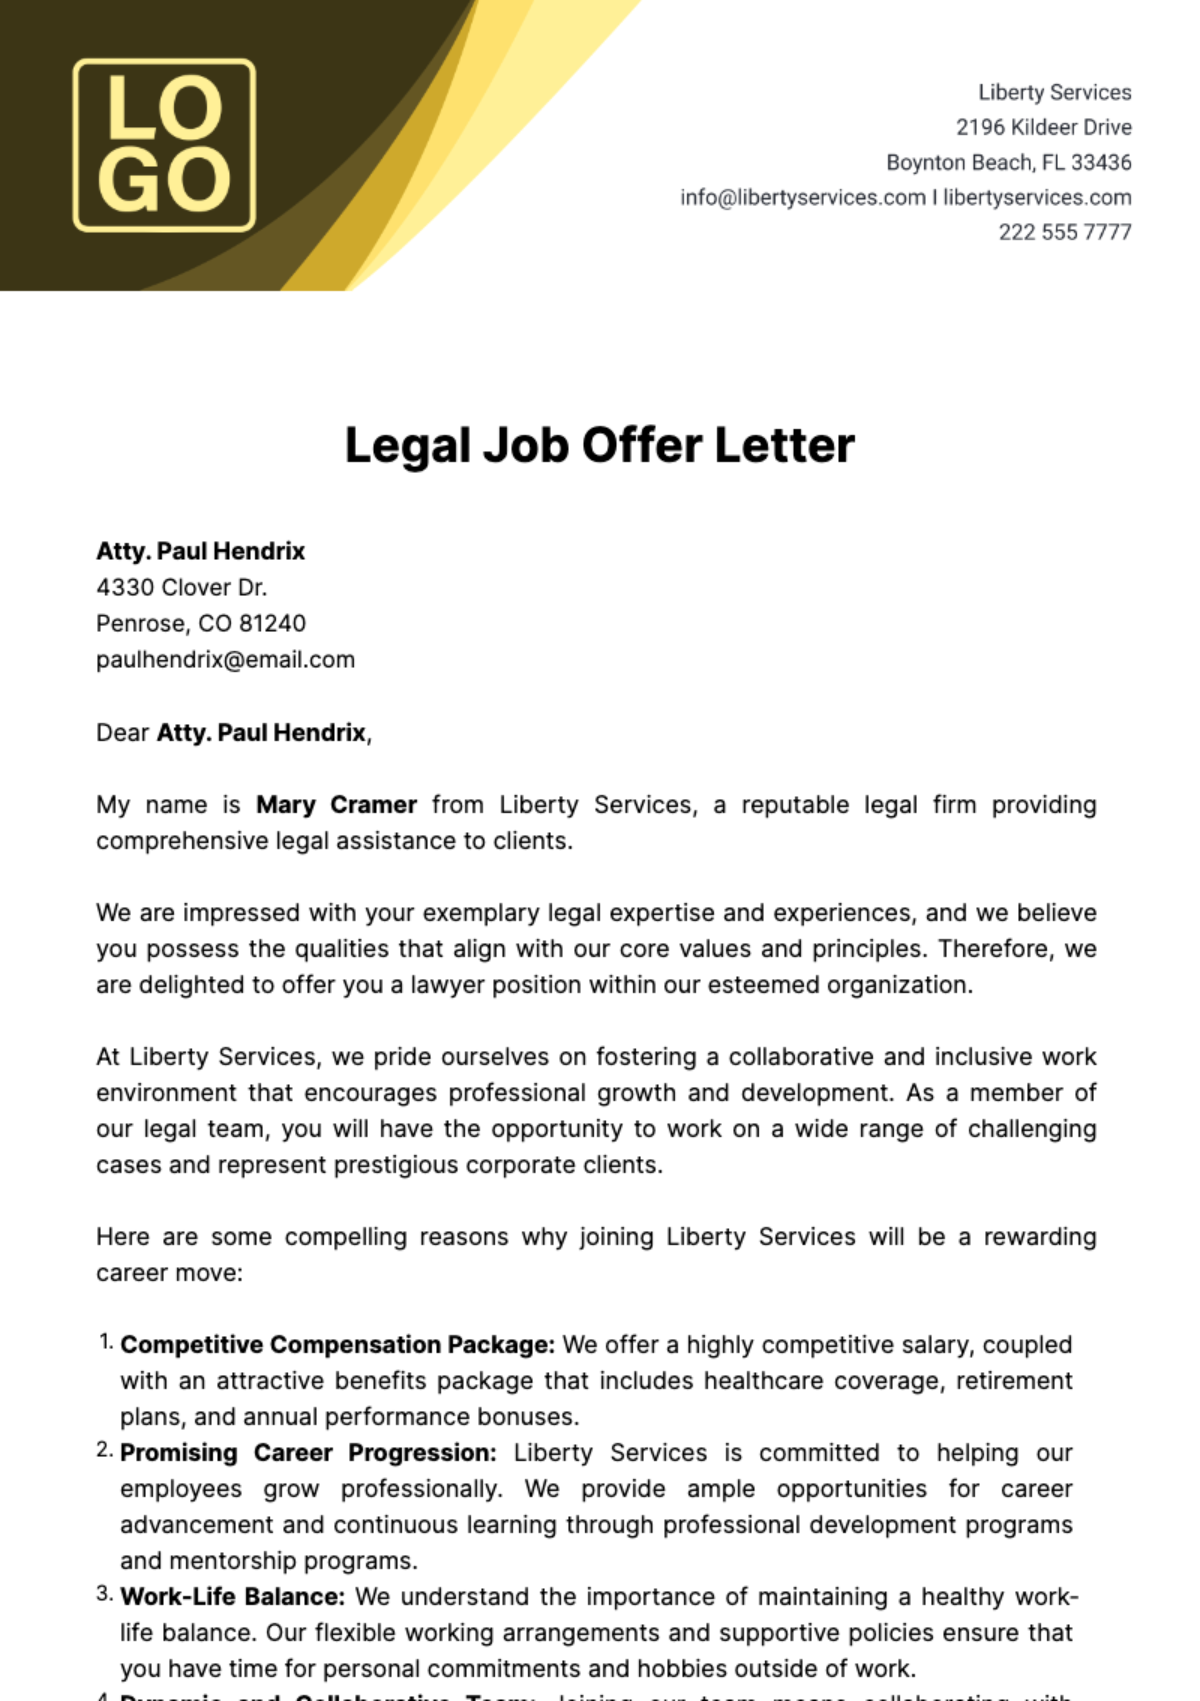 Legal Job Offer Letter  Template